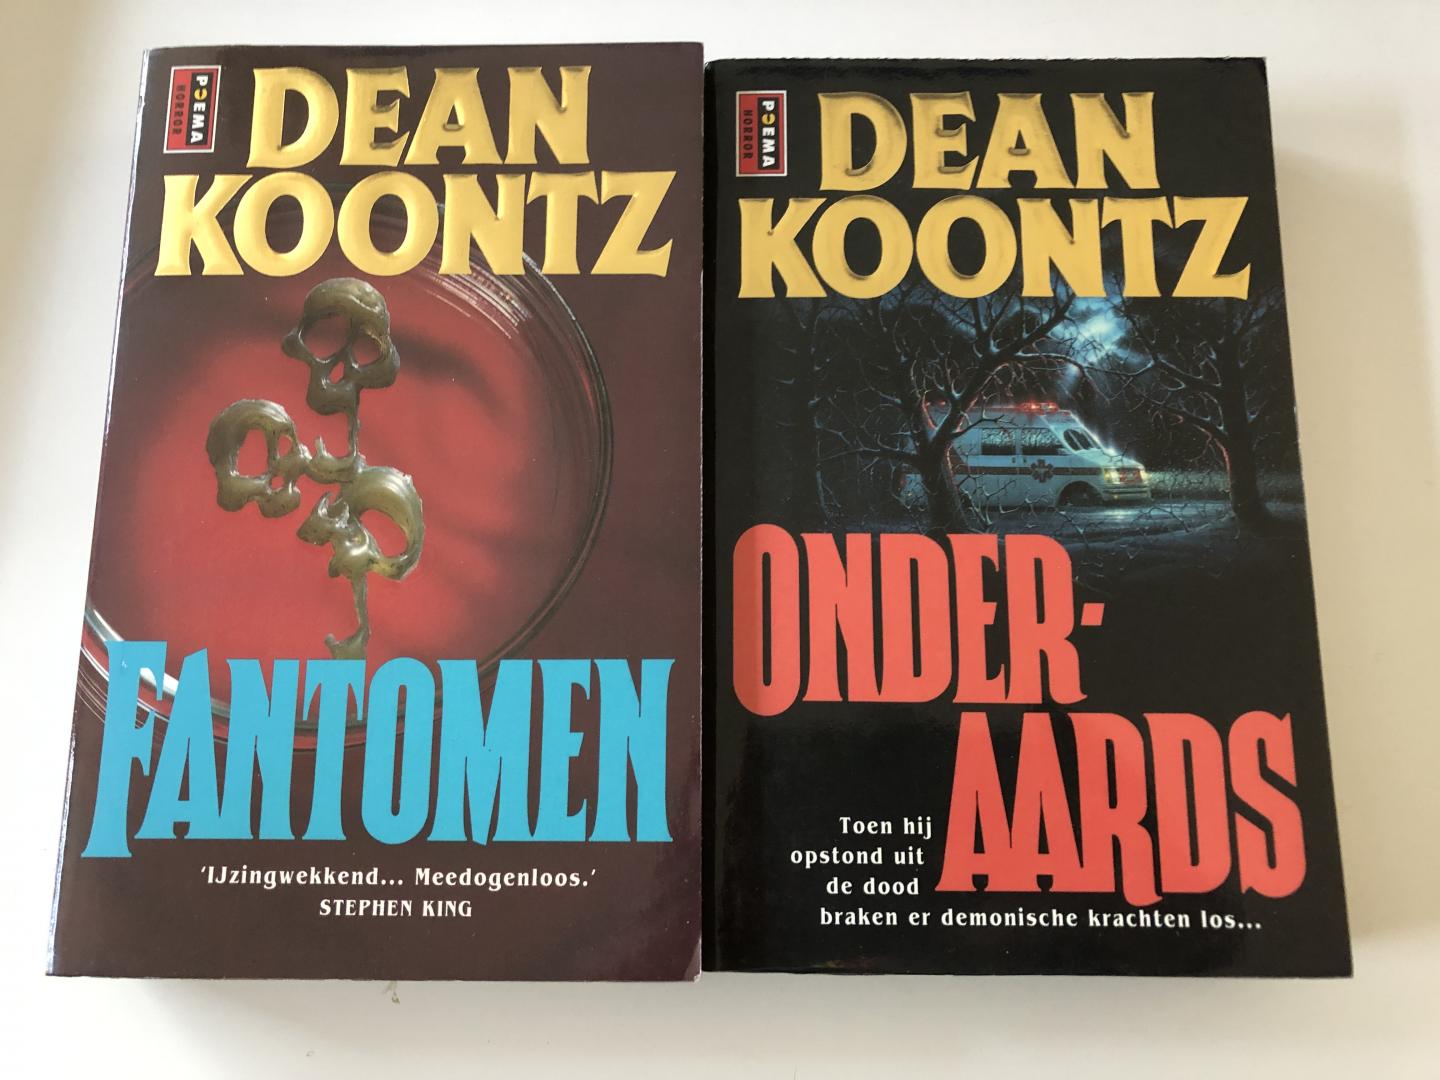 Koontz, D.R. - 2 delen van Kroontz; Fantomen & Onderaards